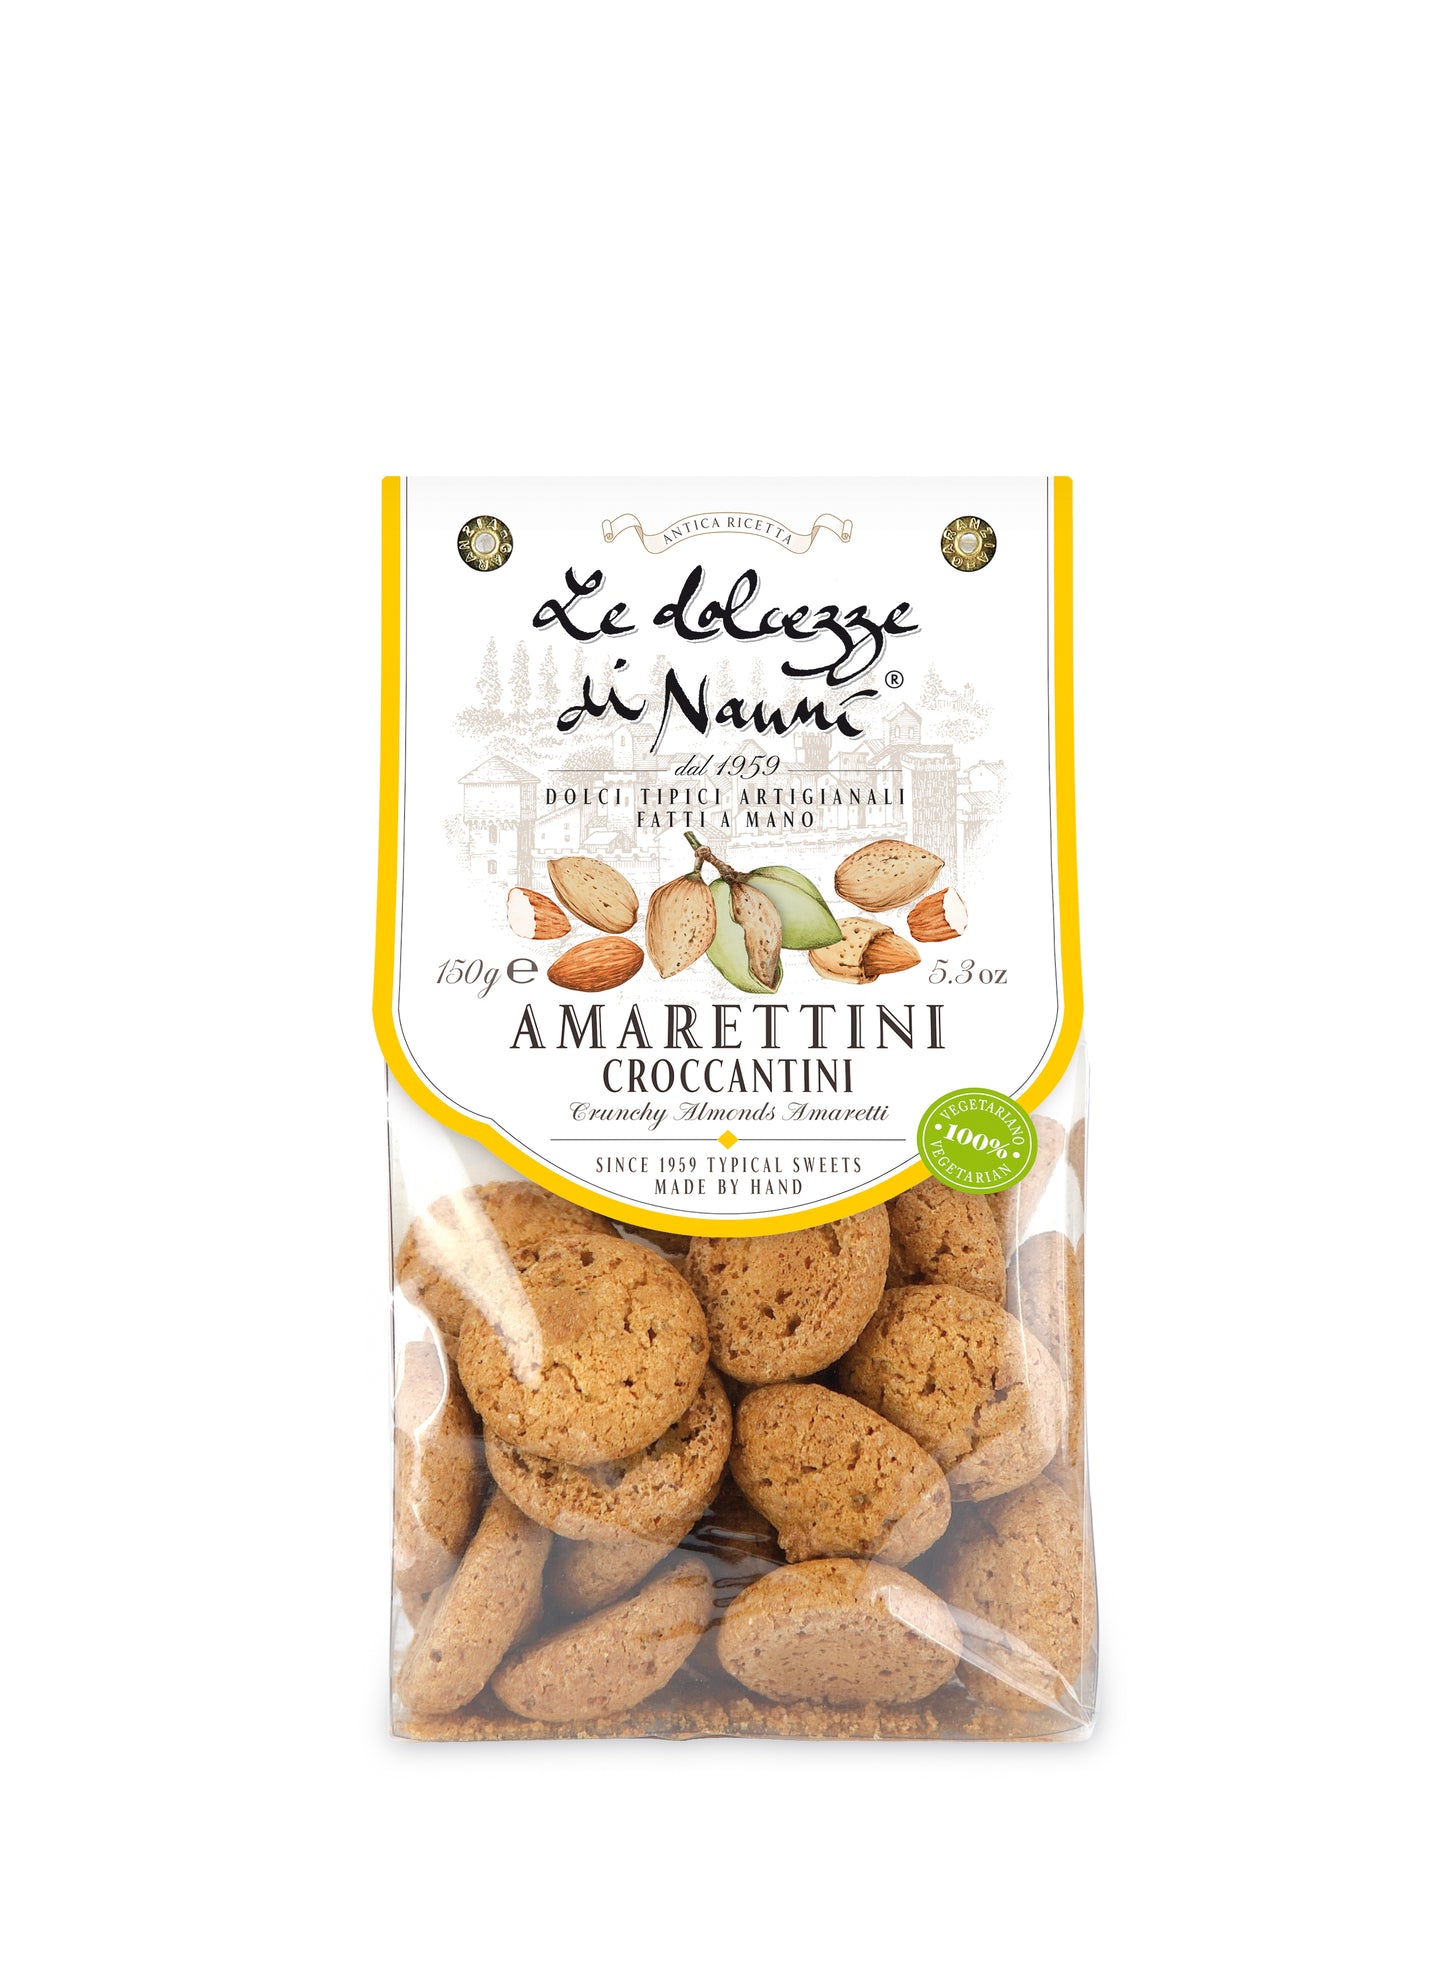 Crunchy Almond Amaretti by Nanni: Tuscany, 5.25 oz, 8/CS